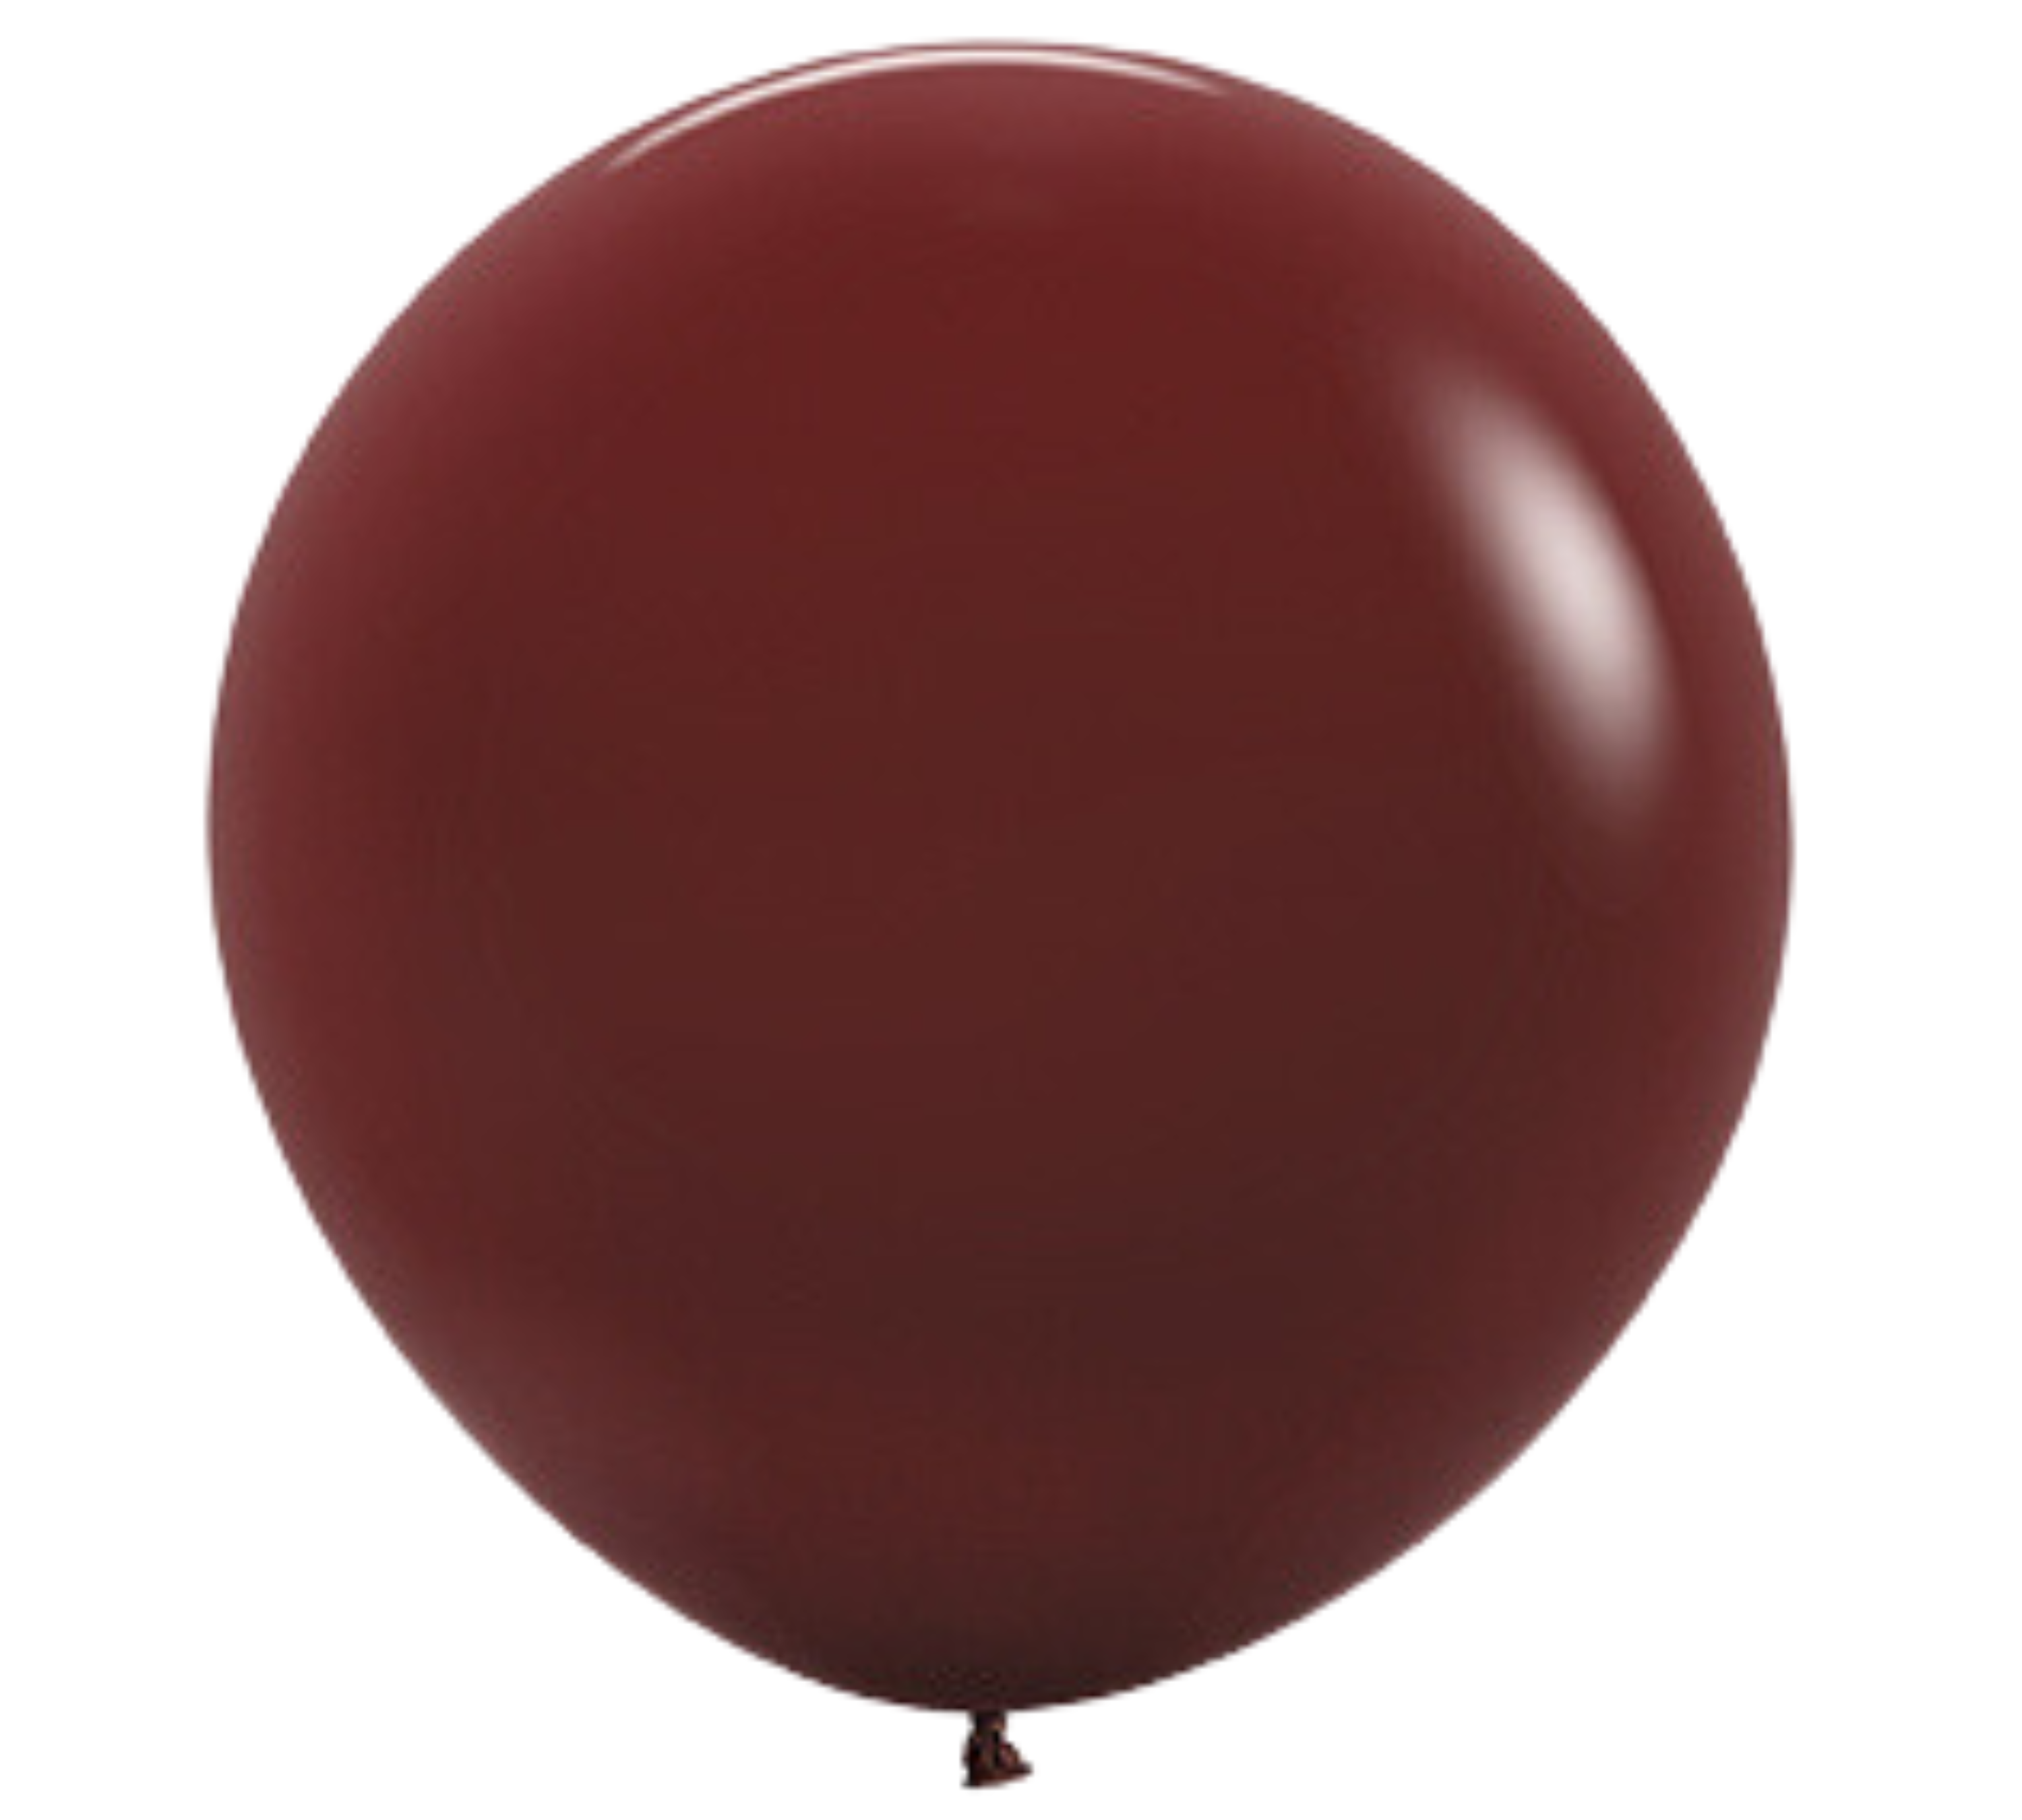 24" Sempertex Deluxe Merlot Latex Balloons | 10 Count